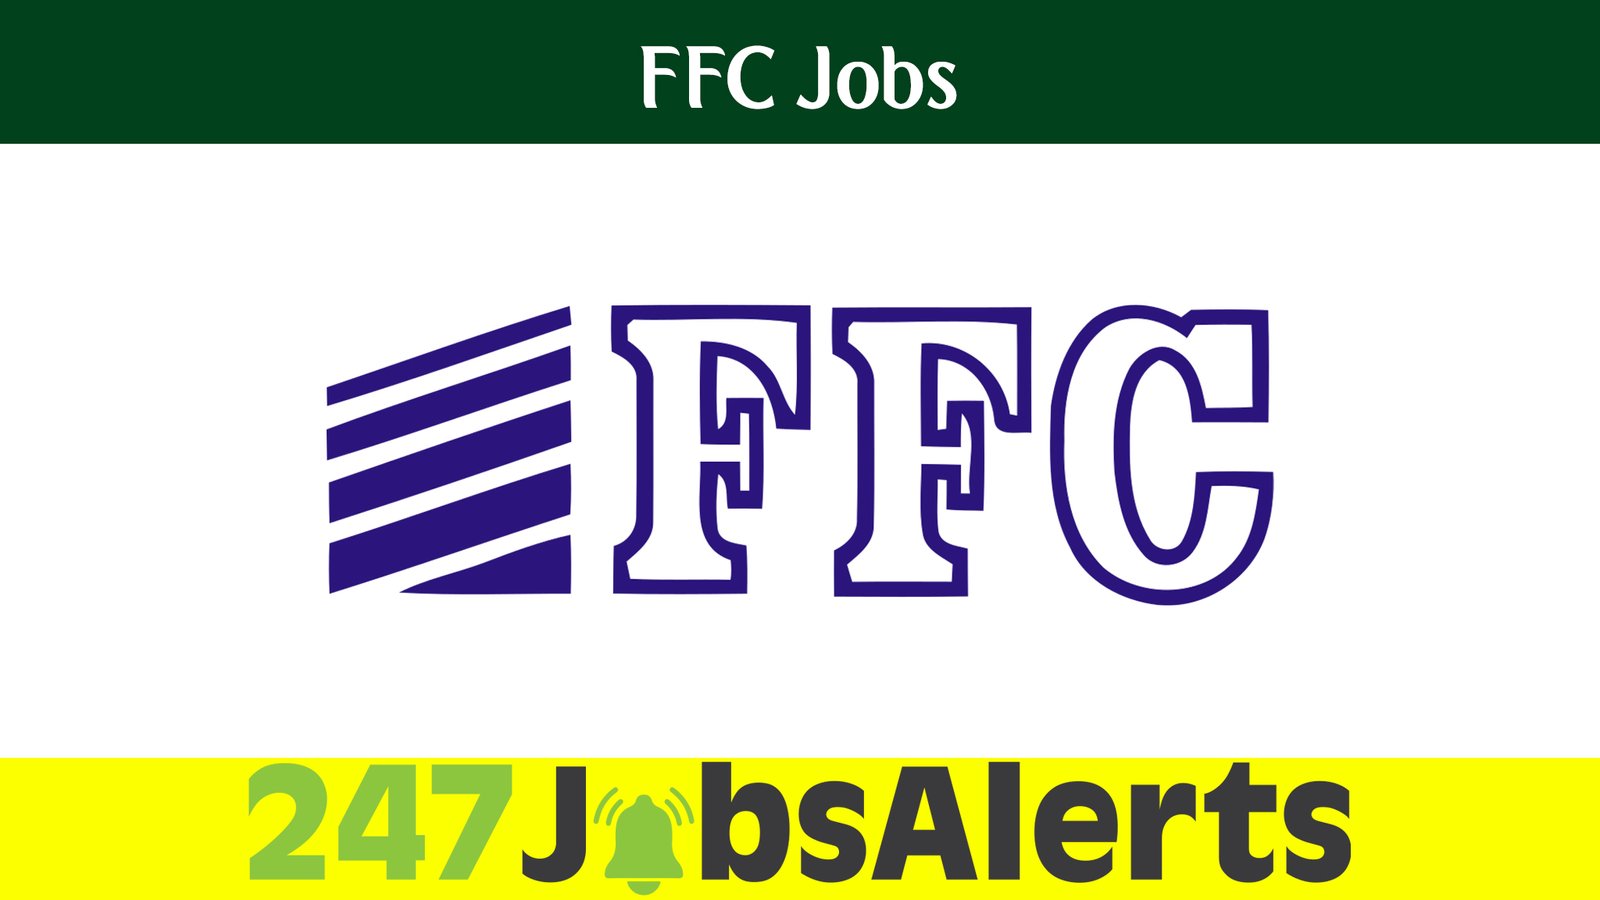 FFC Jobs